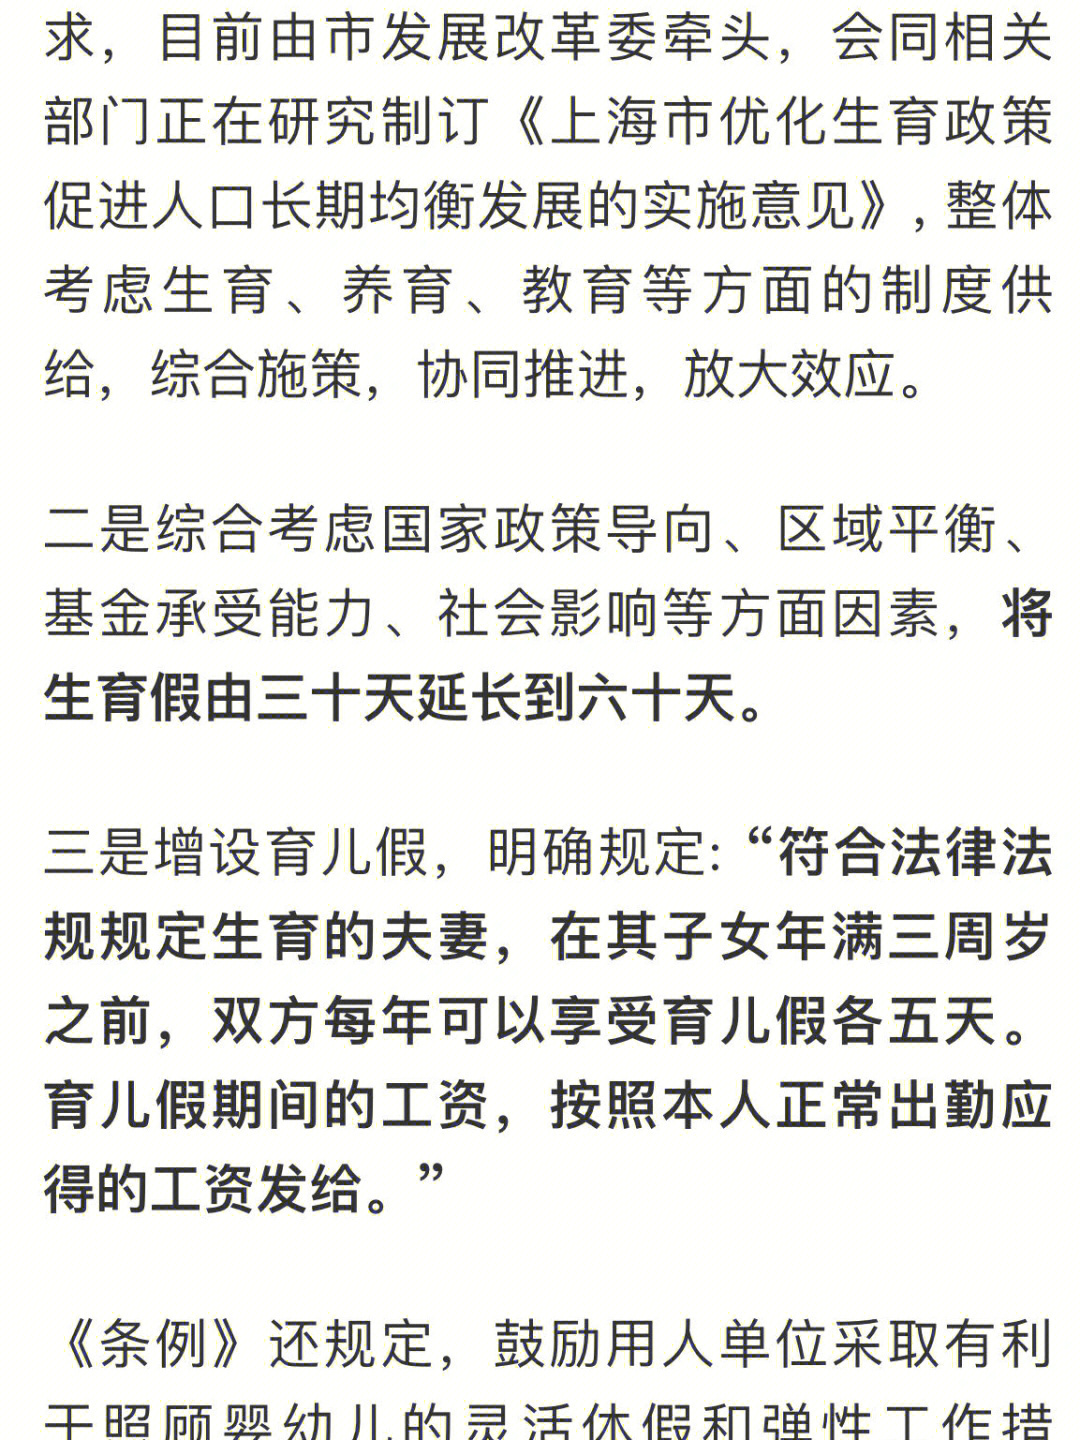 上海生育假增加30天育儿假5天